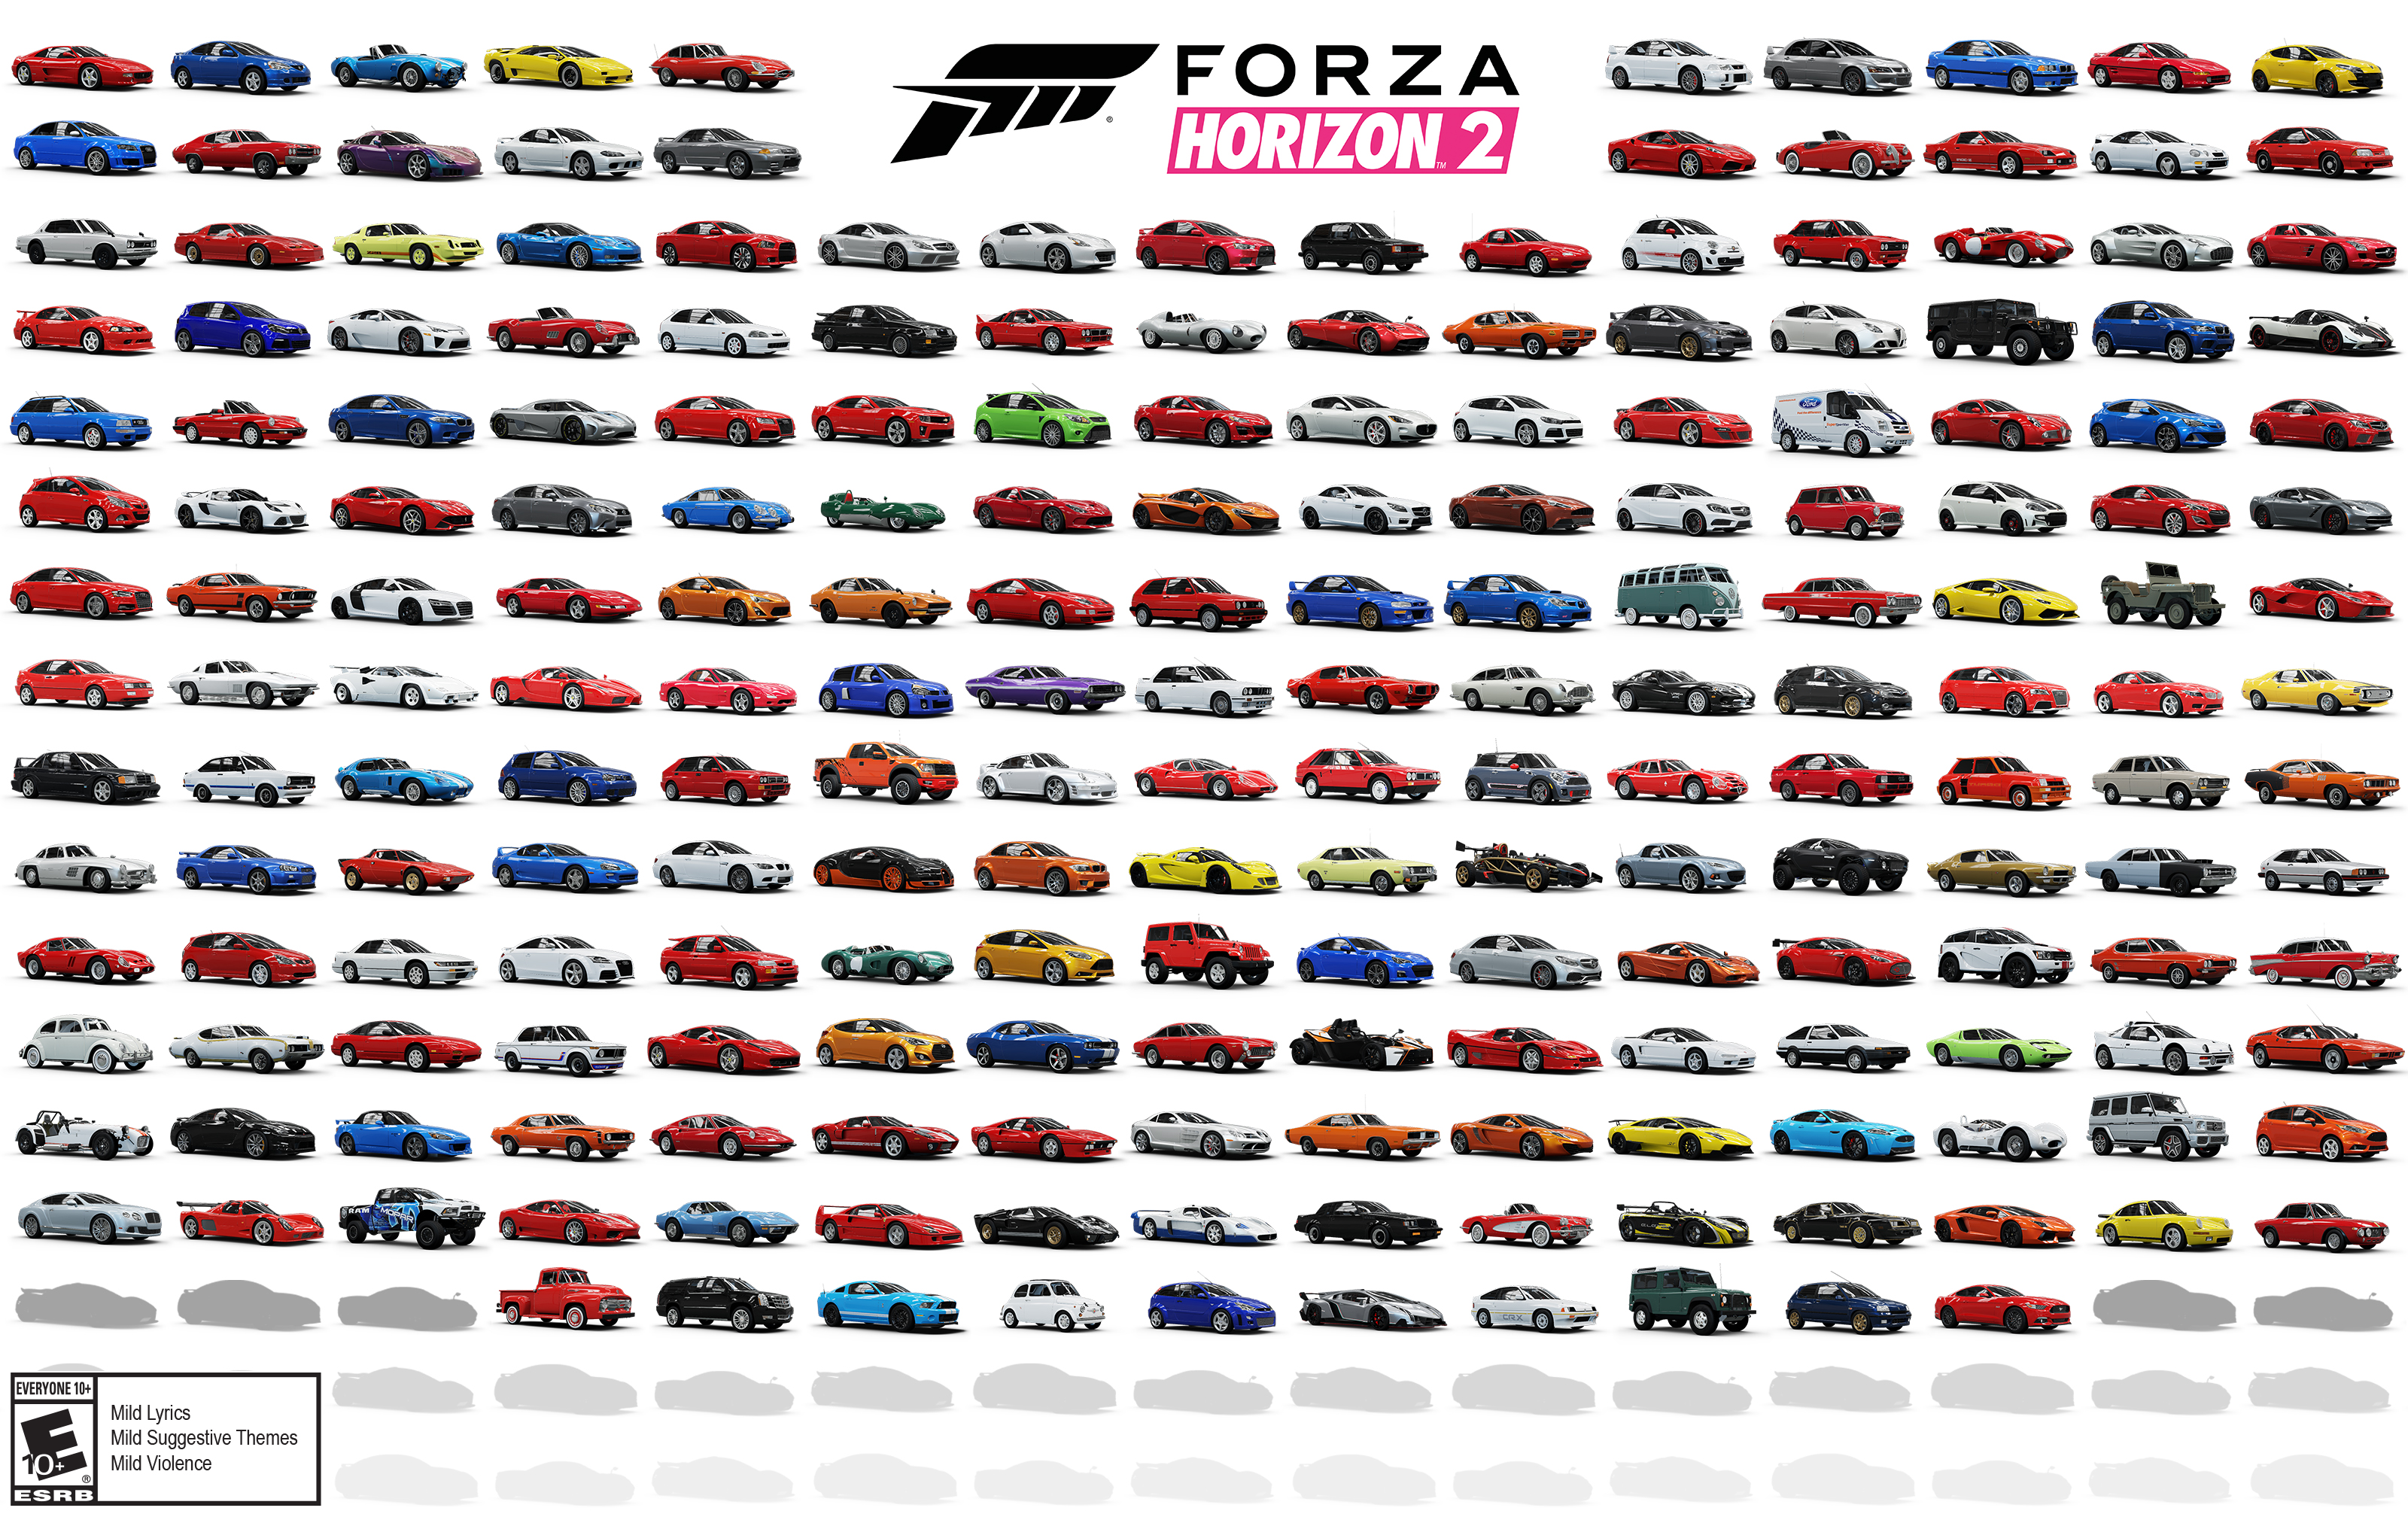 Forza Horizon 2 : les 210 voitures en une seule image